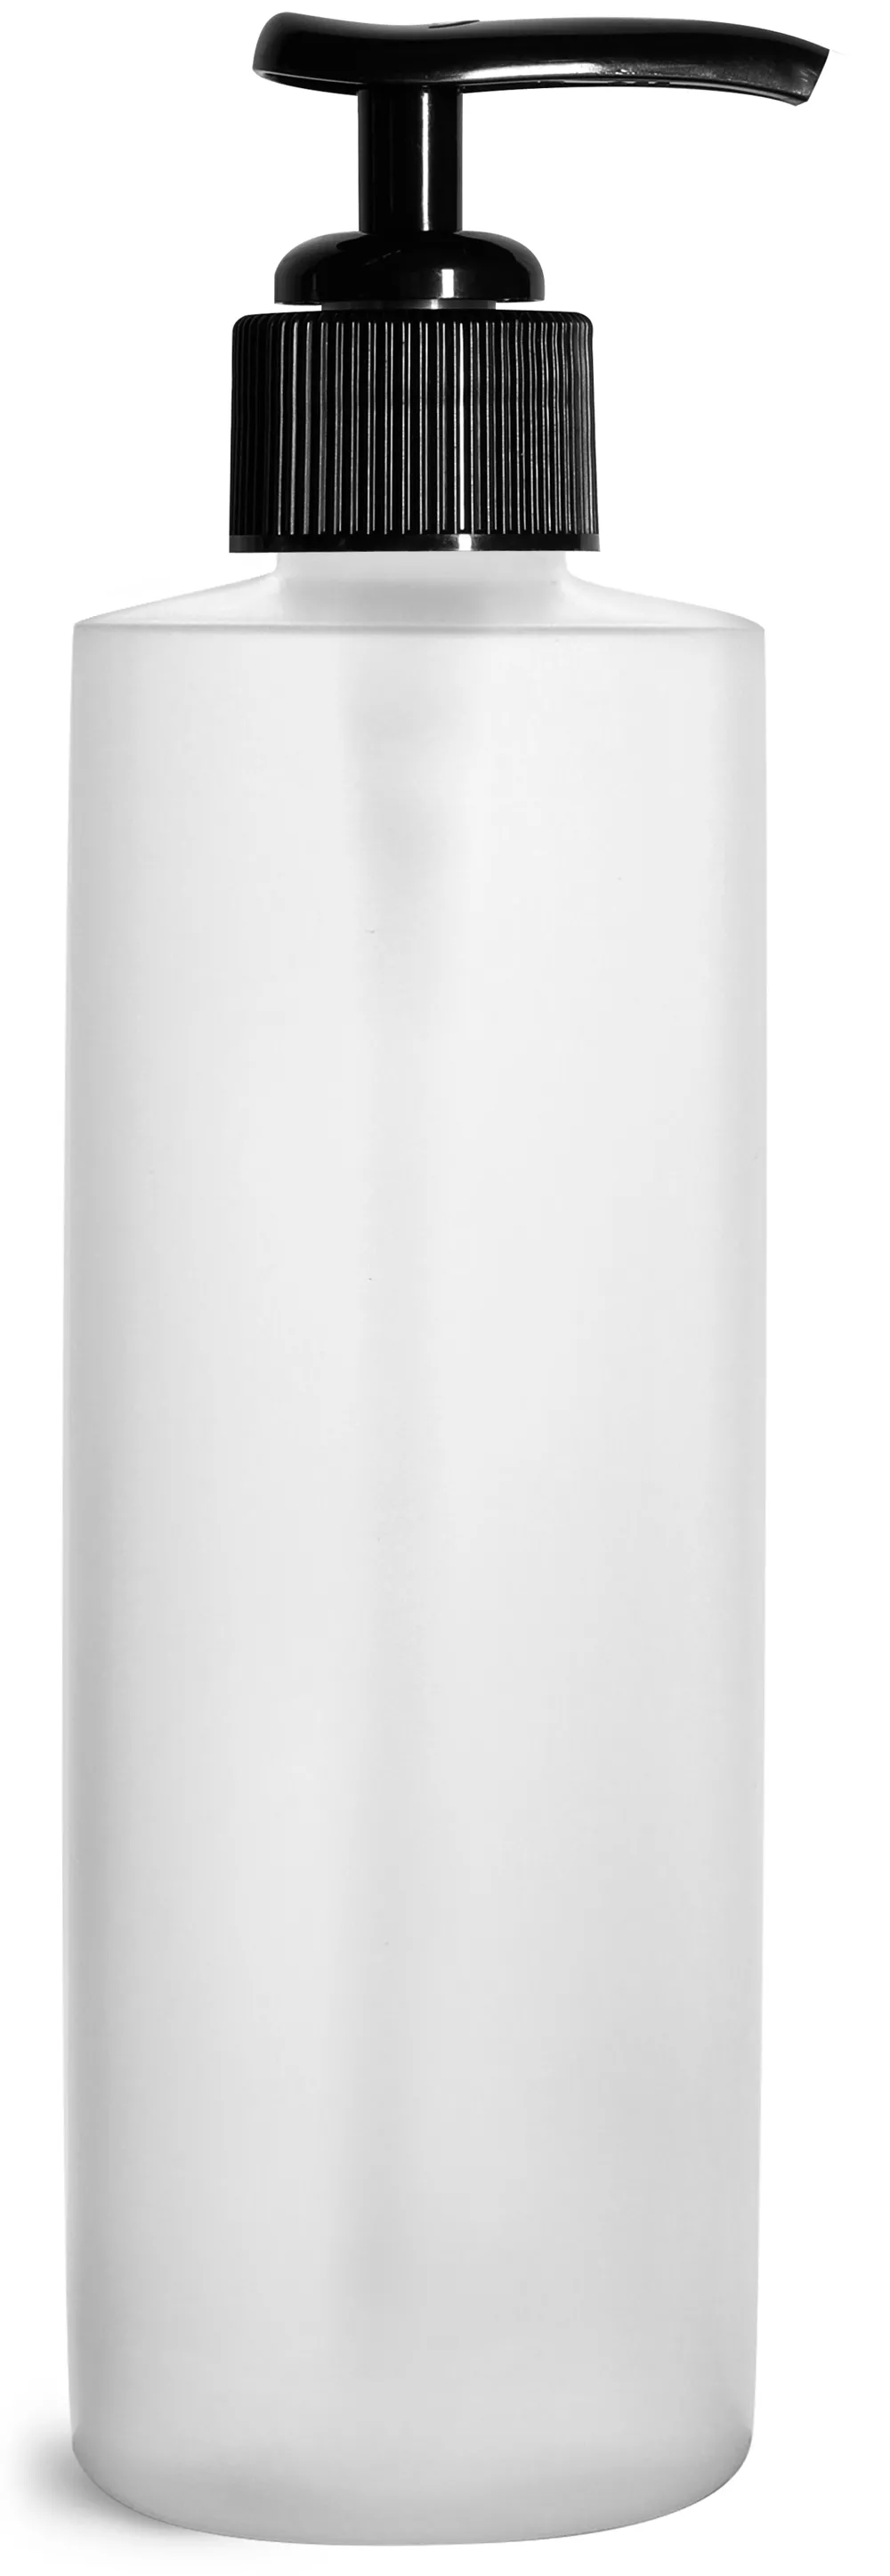 8 oz Natural HDPE Cylinder Bottles w/ Black Ribbed Polypropylene Lotion Pumps